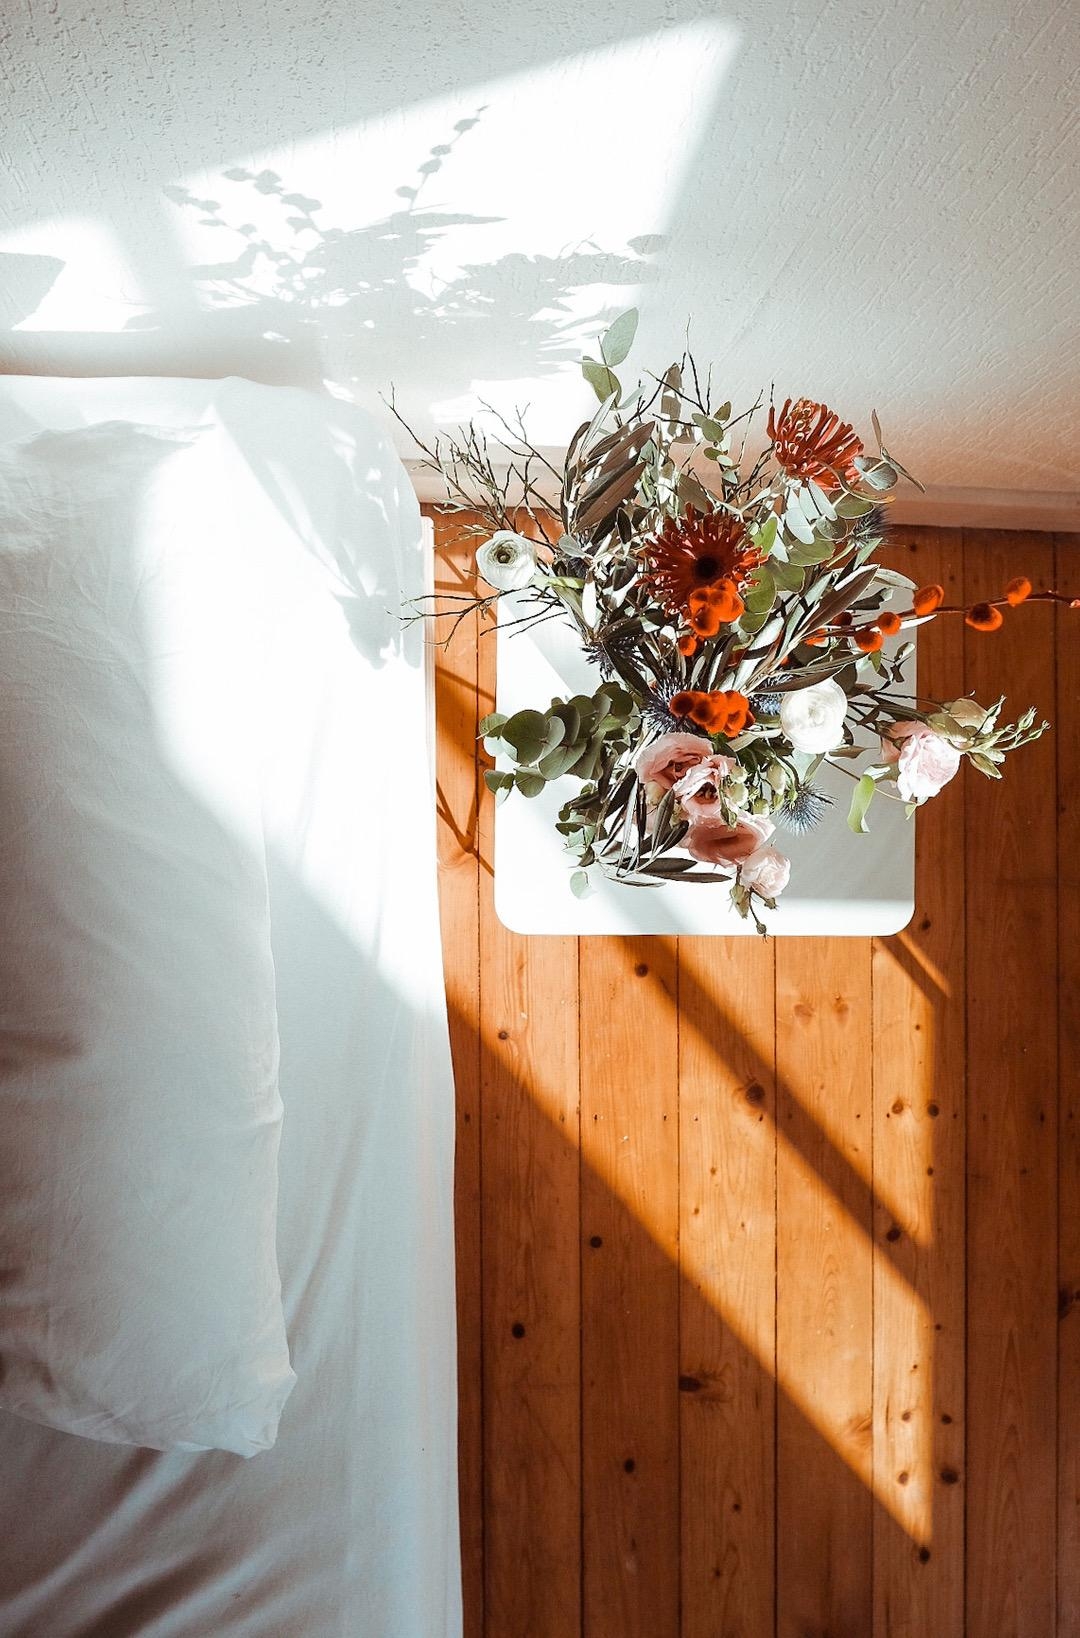 Sonnenlicht am Morgen 
#myfreshflowerfriday #bedroom #freshflowerfriday